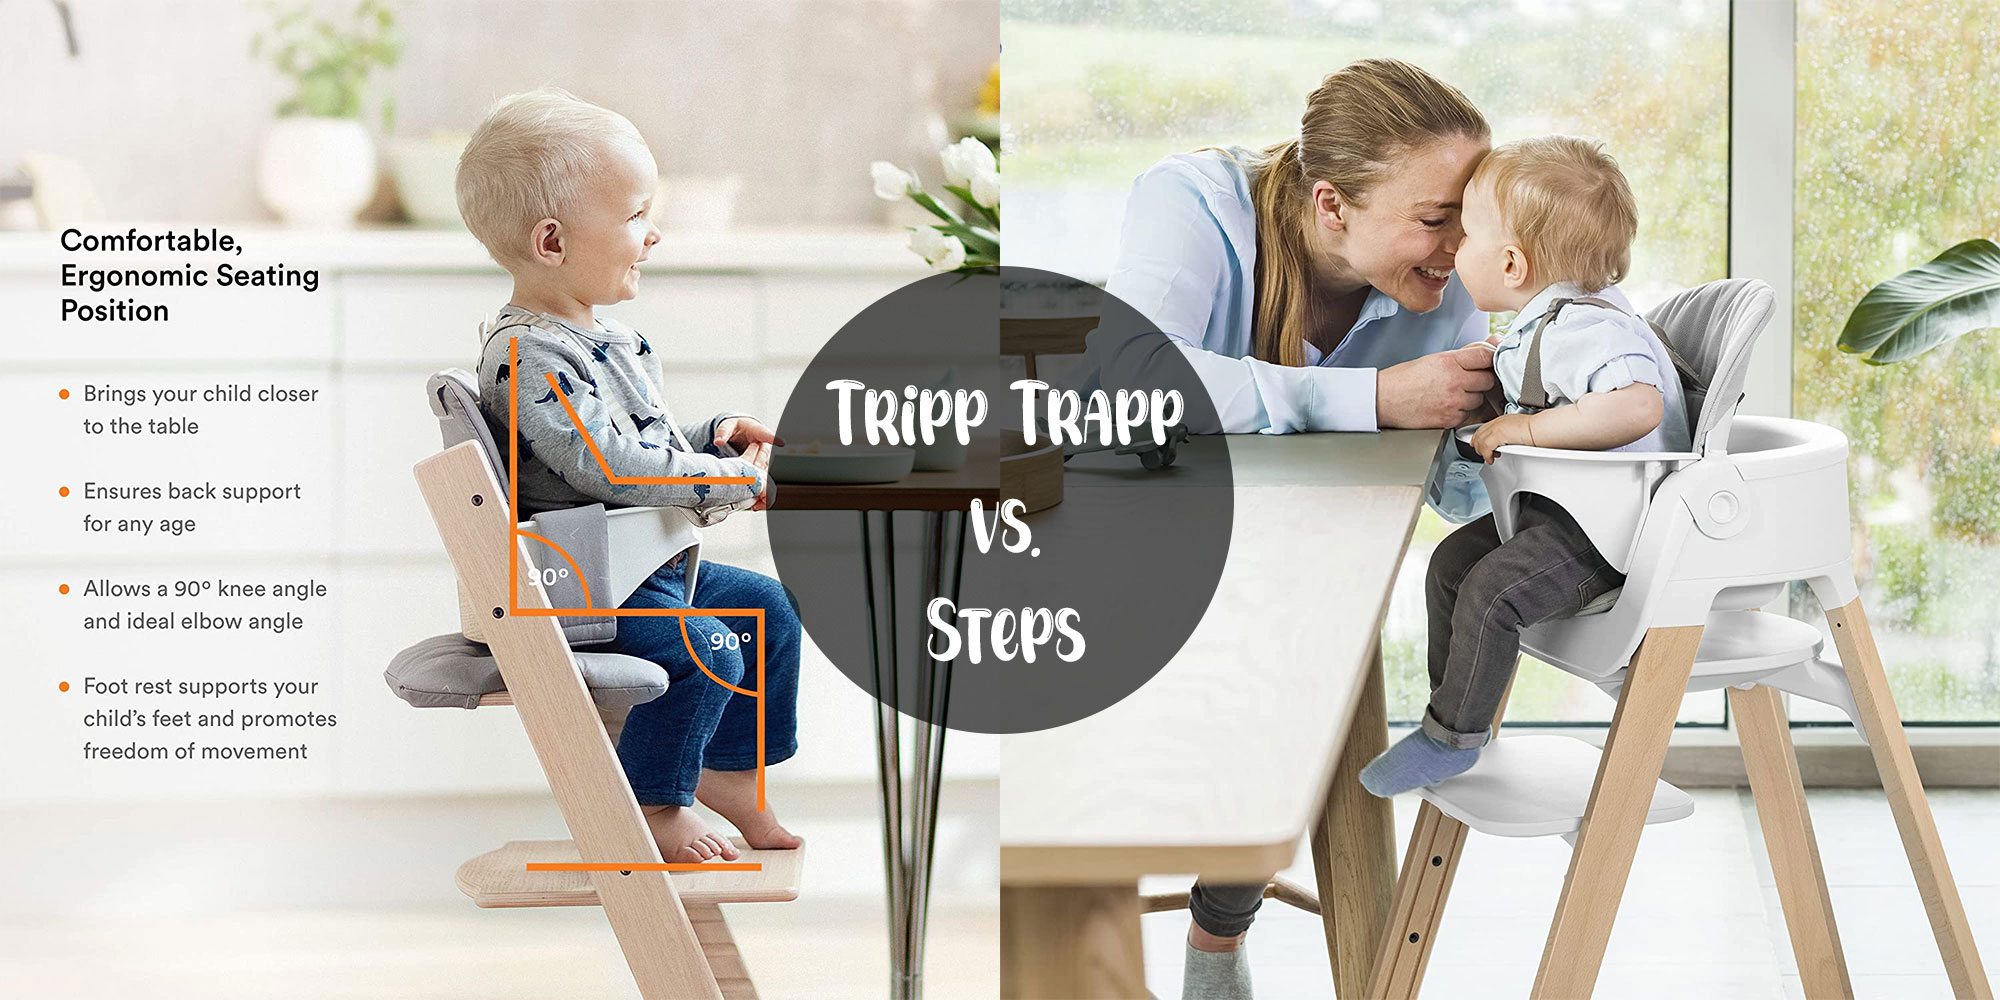 Stokke Tripp Trapp frente a Stokke Steps: qué silla elegir